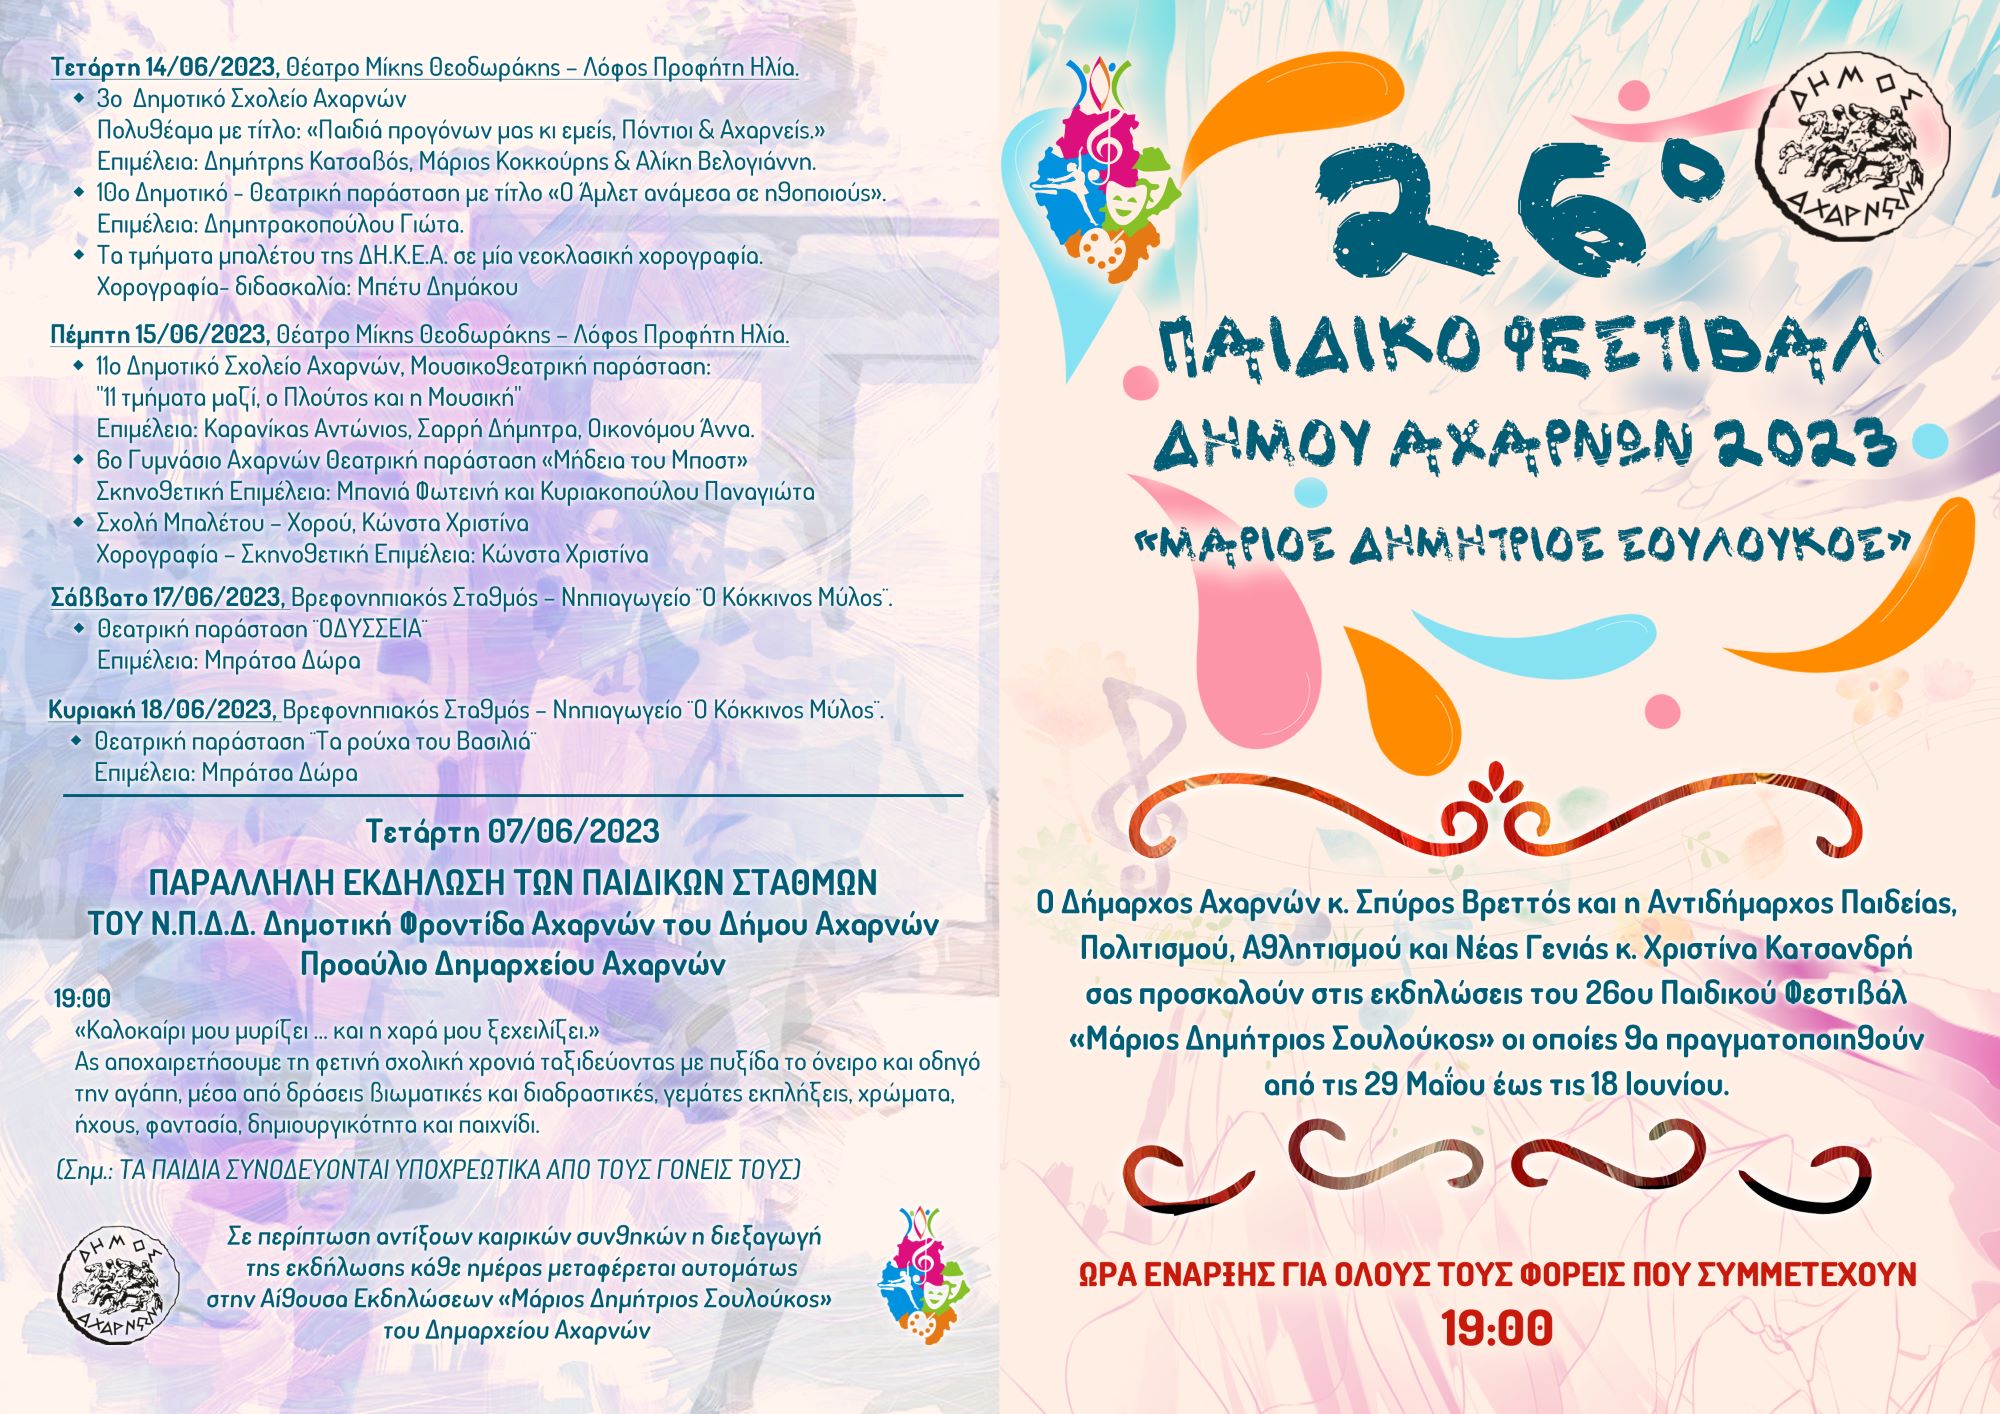 Ξεκινά στις 29 Μαΐου το Παιδικό Φεστιβάλ του Δήμου Αχαρνών